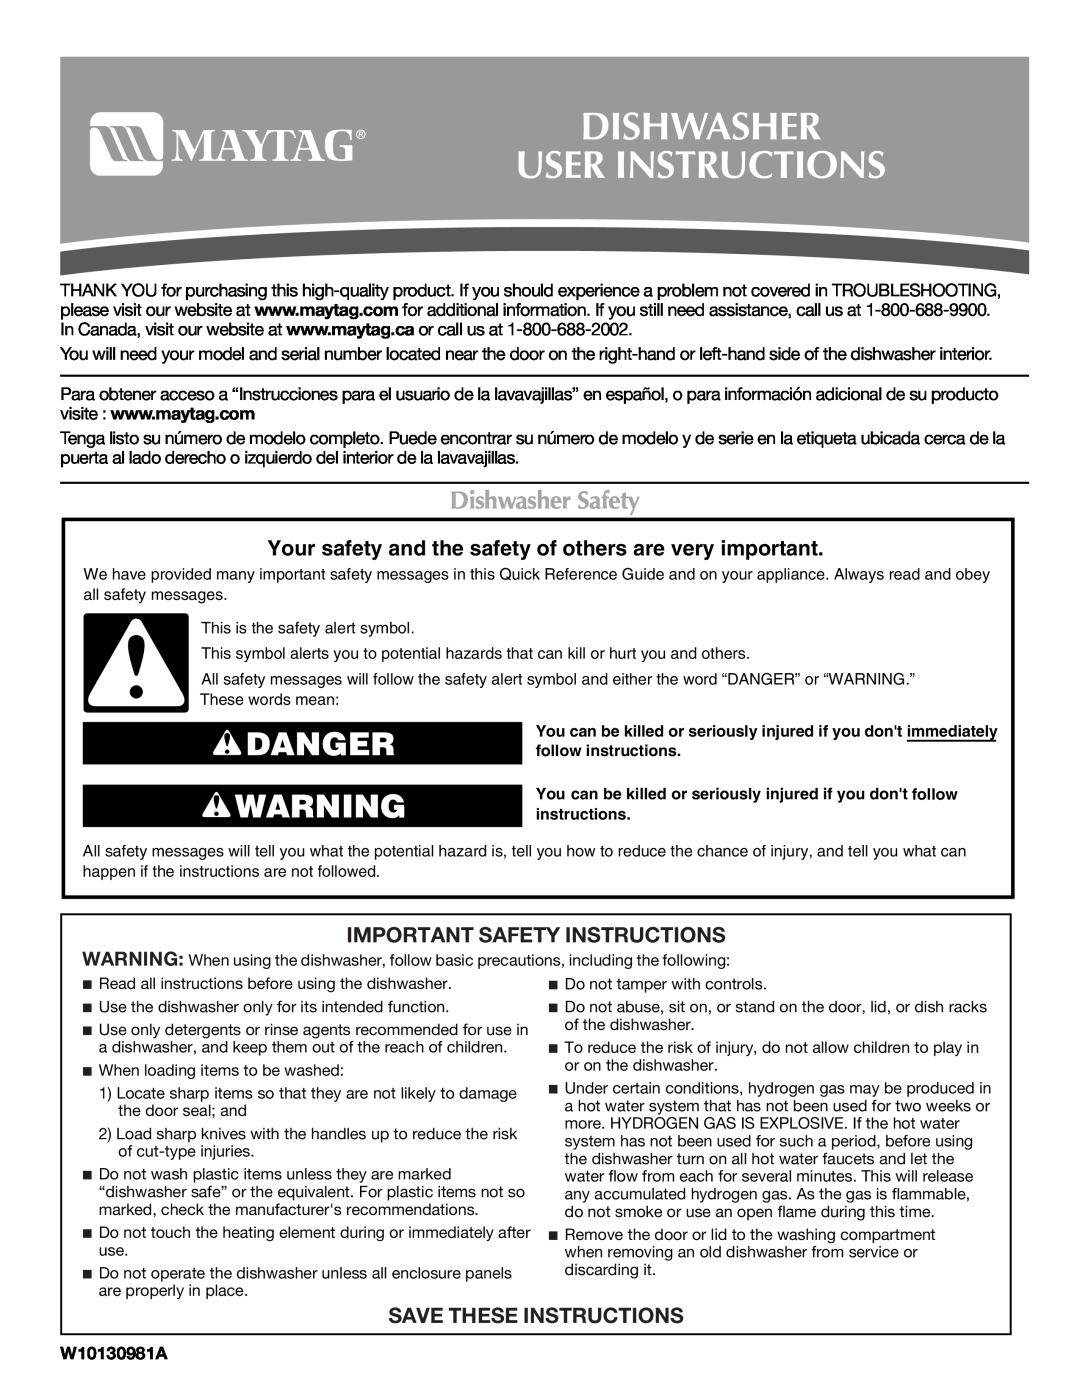 Maytag MDB4621AWW0 important safety instructions Dishwasher User Instructions, Danger, Dishwasher Safety, W10130981A 